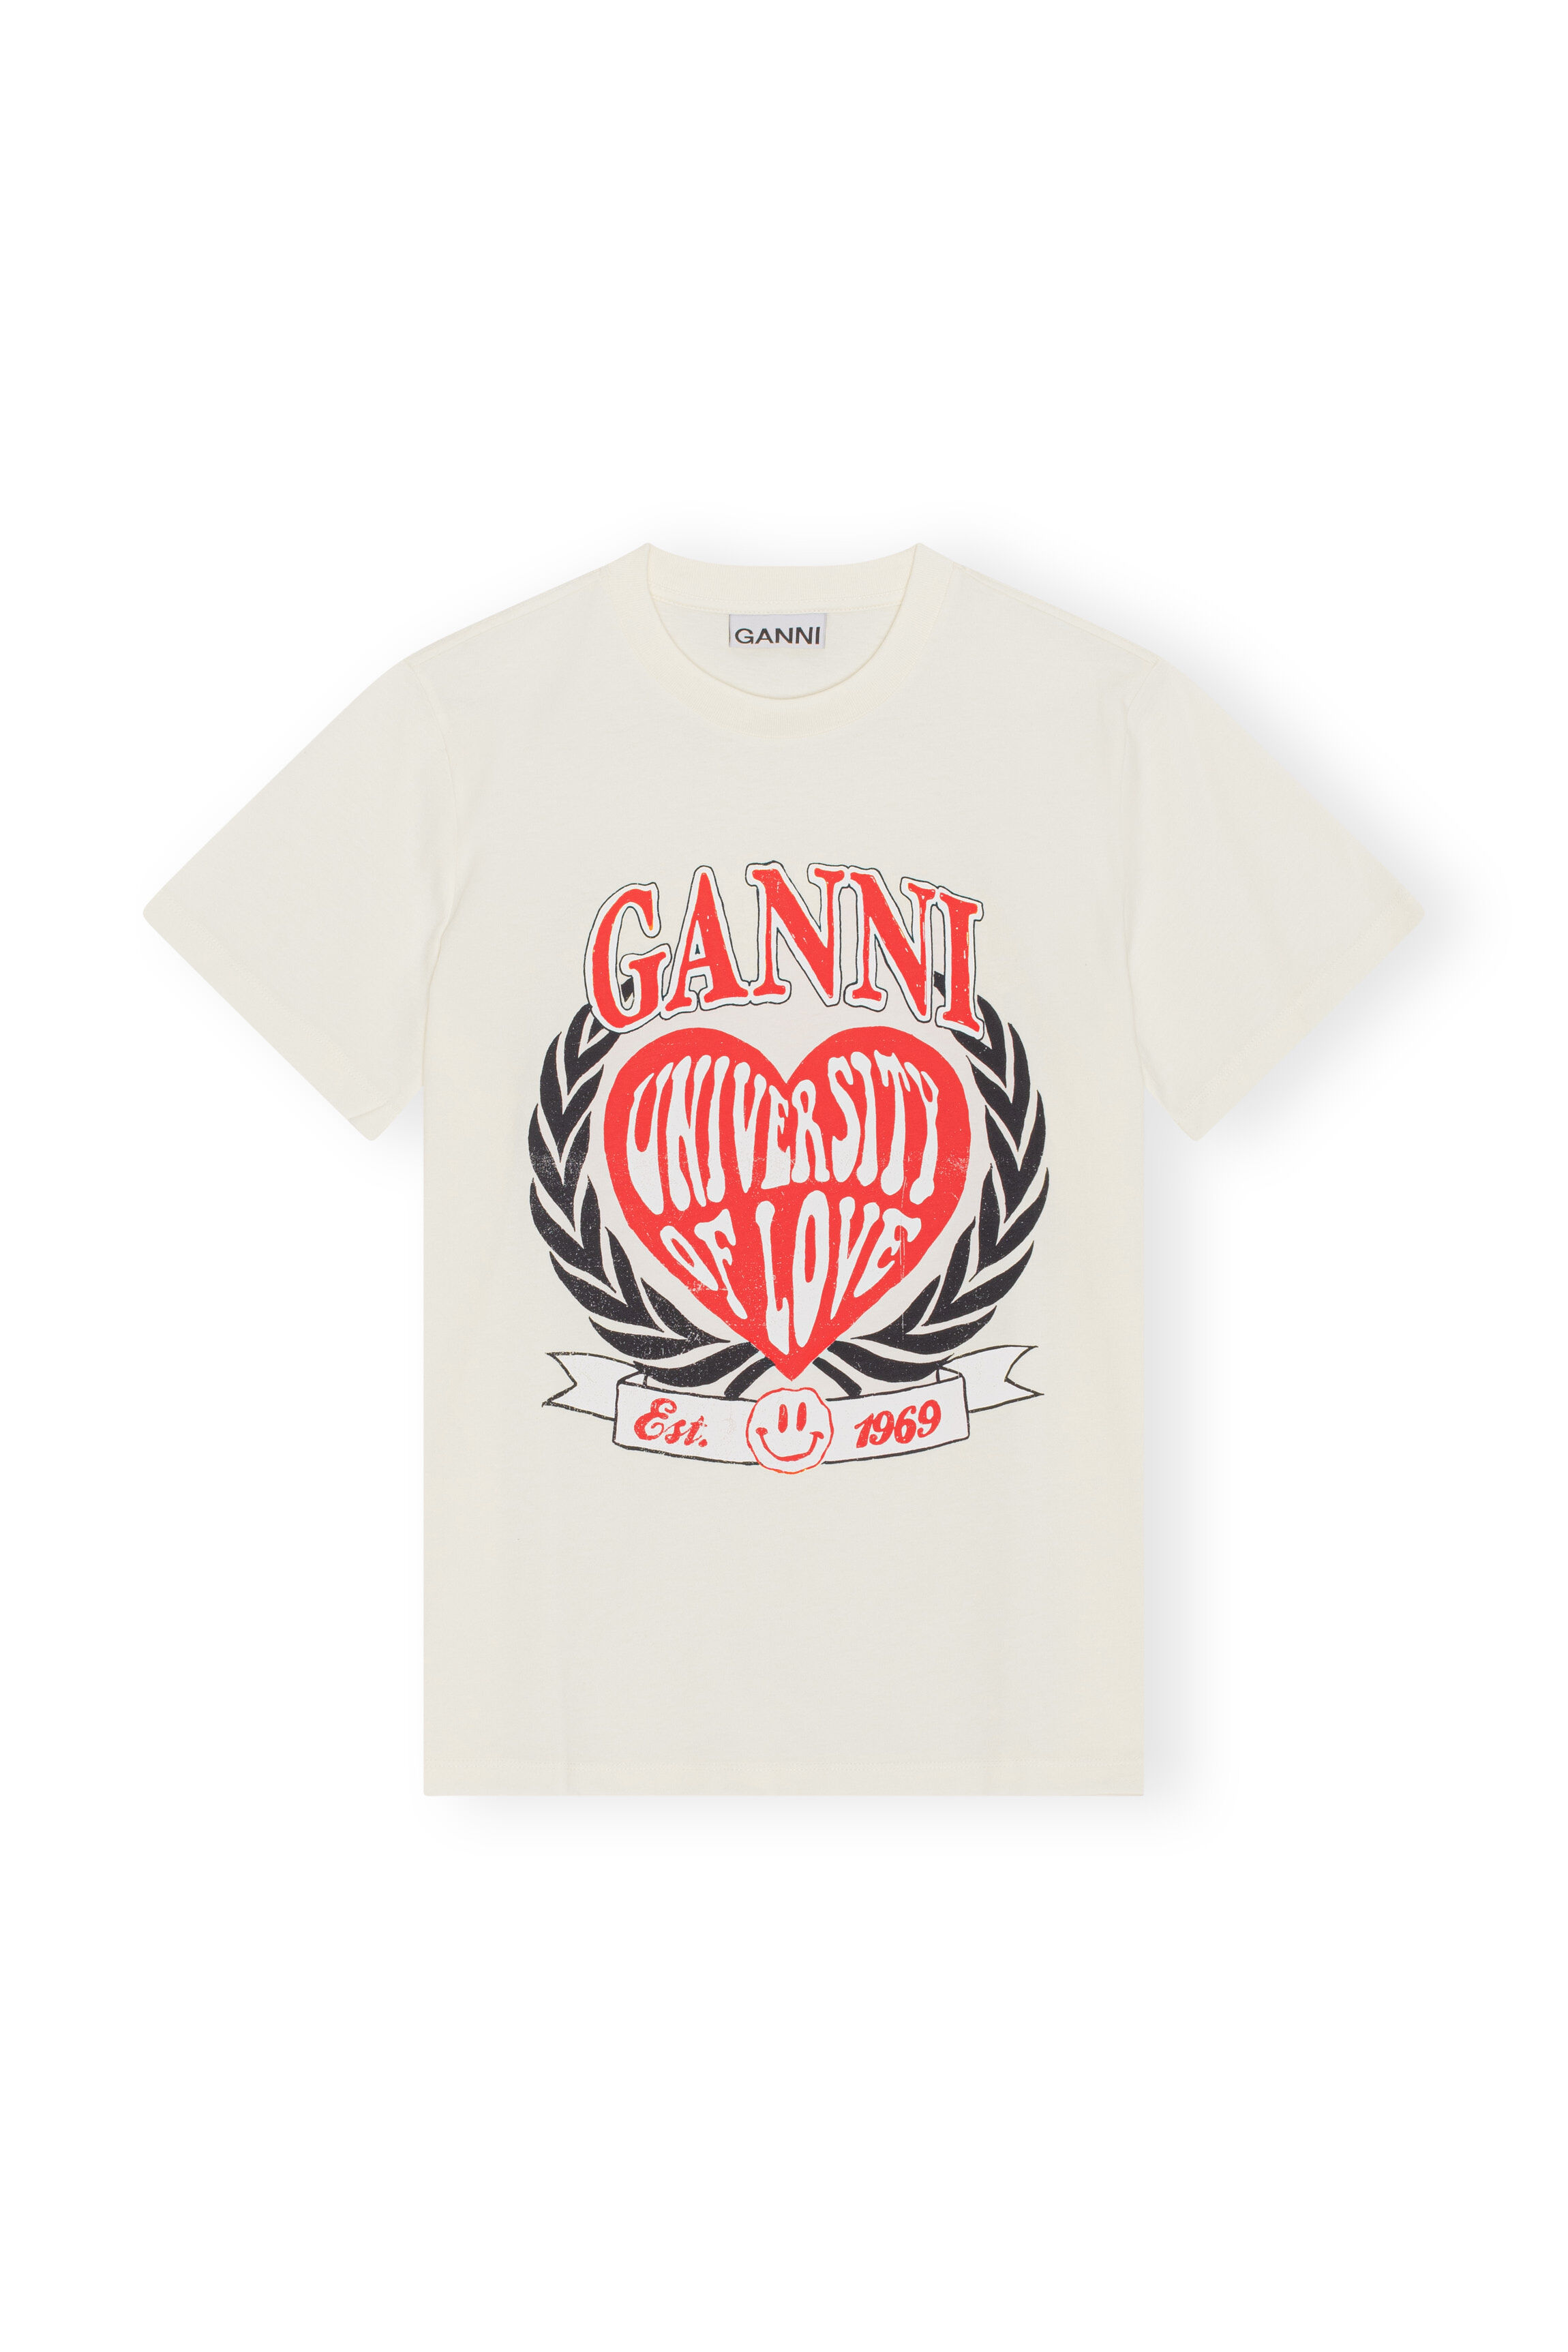 Femme Vêtements Tops T-shirts T-shirt classique Coton Ganni en coloris Blanc 